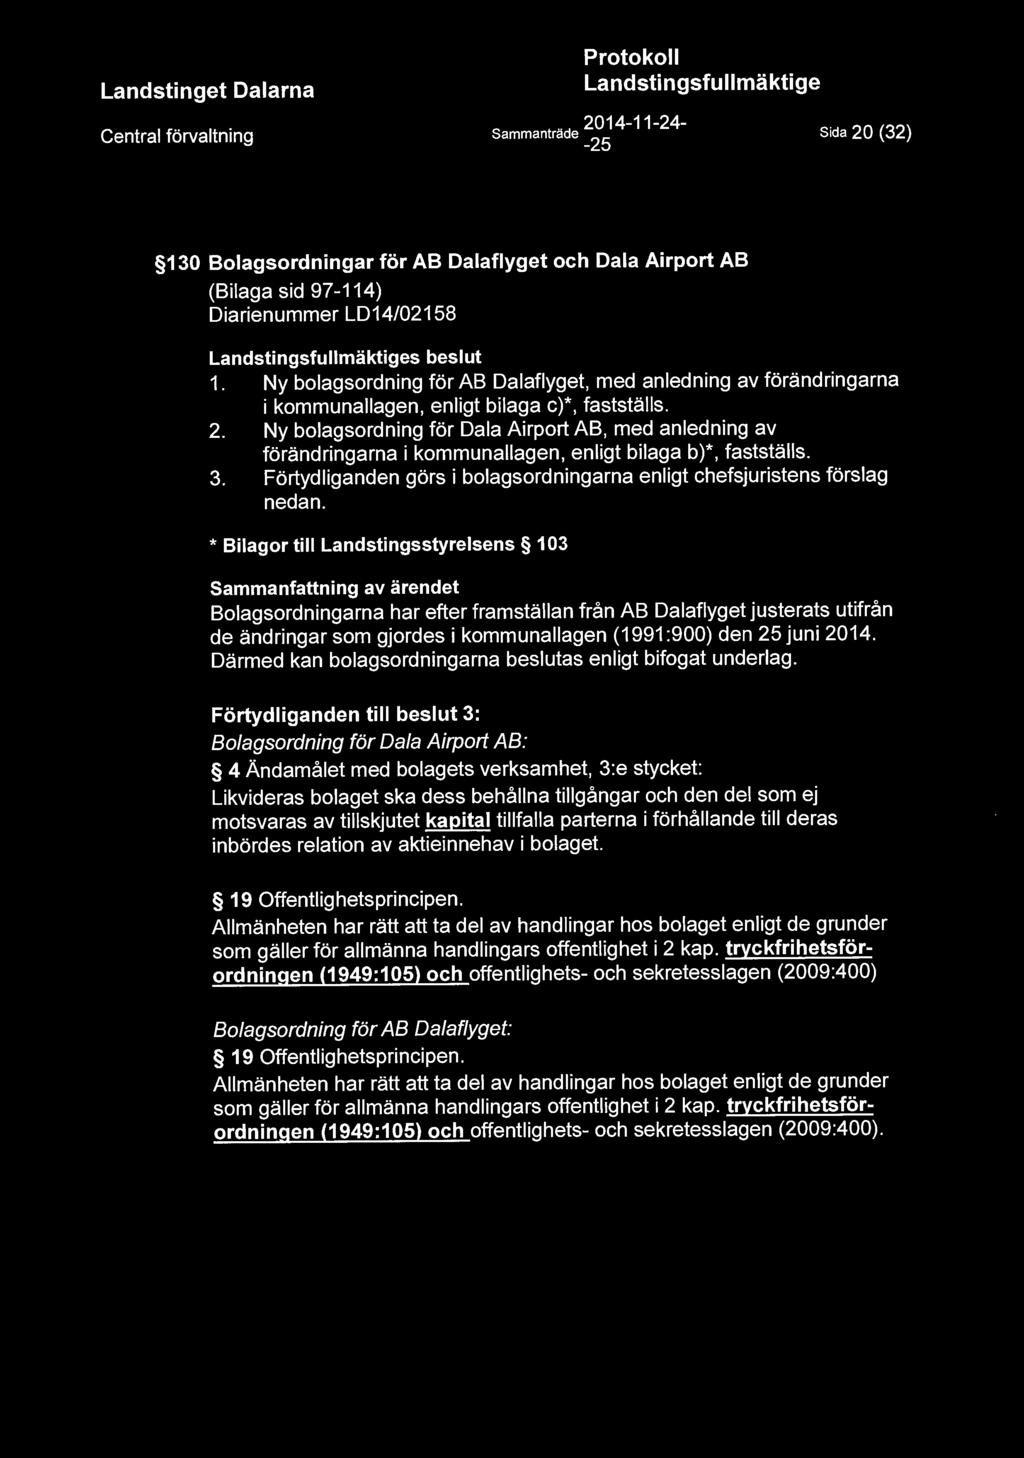 Ny bolagsordning för Dala Airport AB, med anledning av förändringarna i kommunallagen, enligt bilaga b)*, fastställs. 3. Förtydliganden görs i bolagsordningarna enligt chefsjuristens förslag nedan.